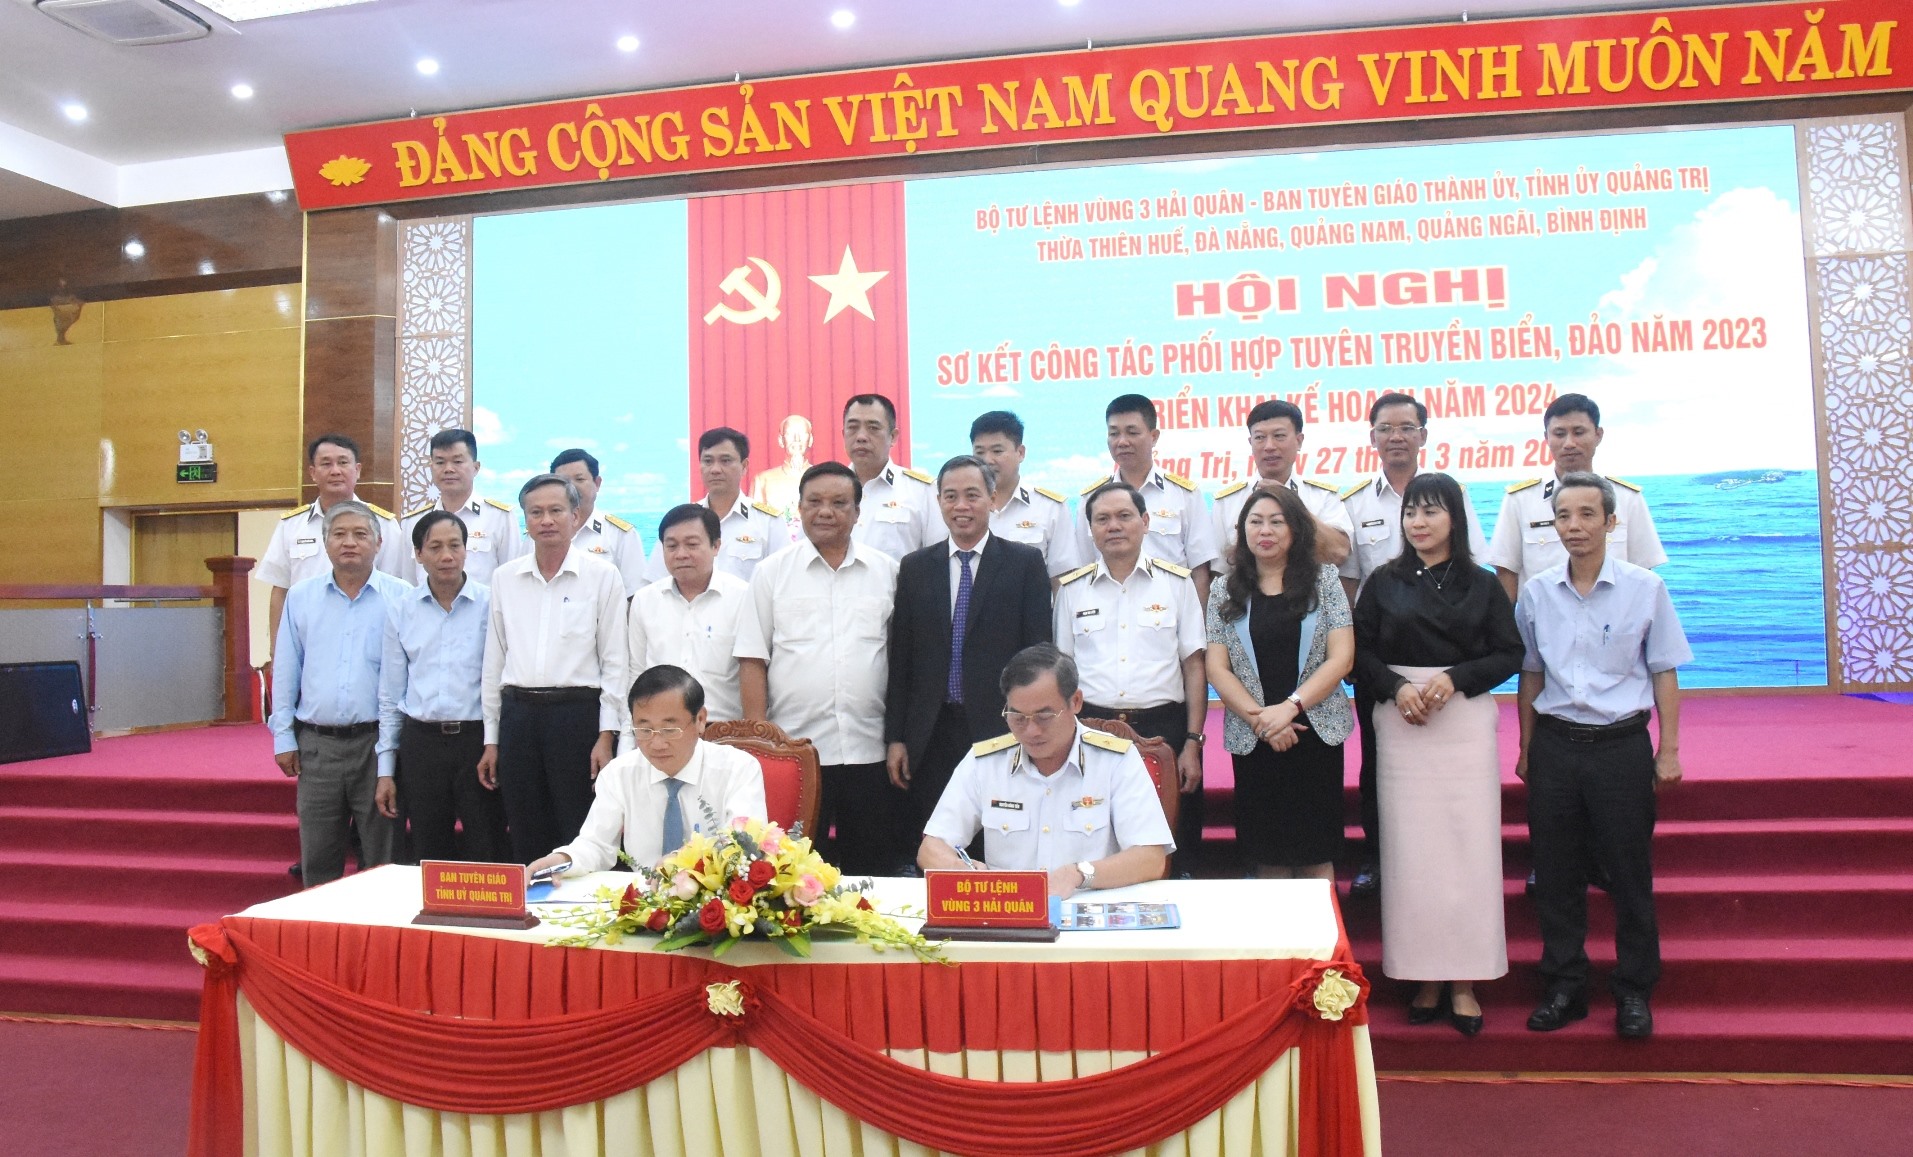 Lãnh đạo Ban Tuyên giáo Tỉnh ủy Quảng Trị ký cam kết phối hợp tuyên truyền biển, đảo với Vùng 3 Hải quân - Ảnh: ĐV